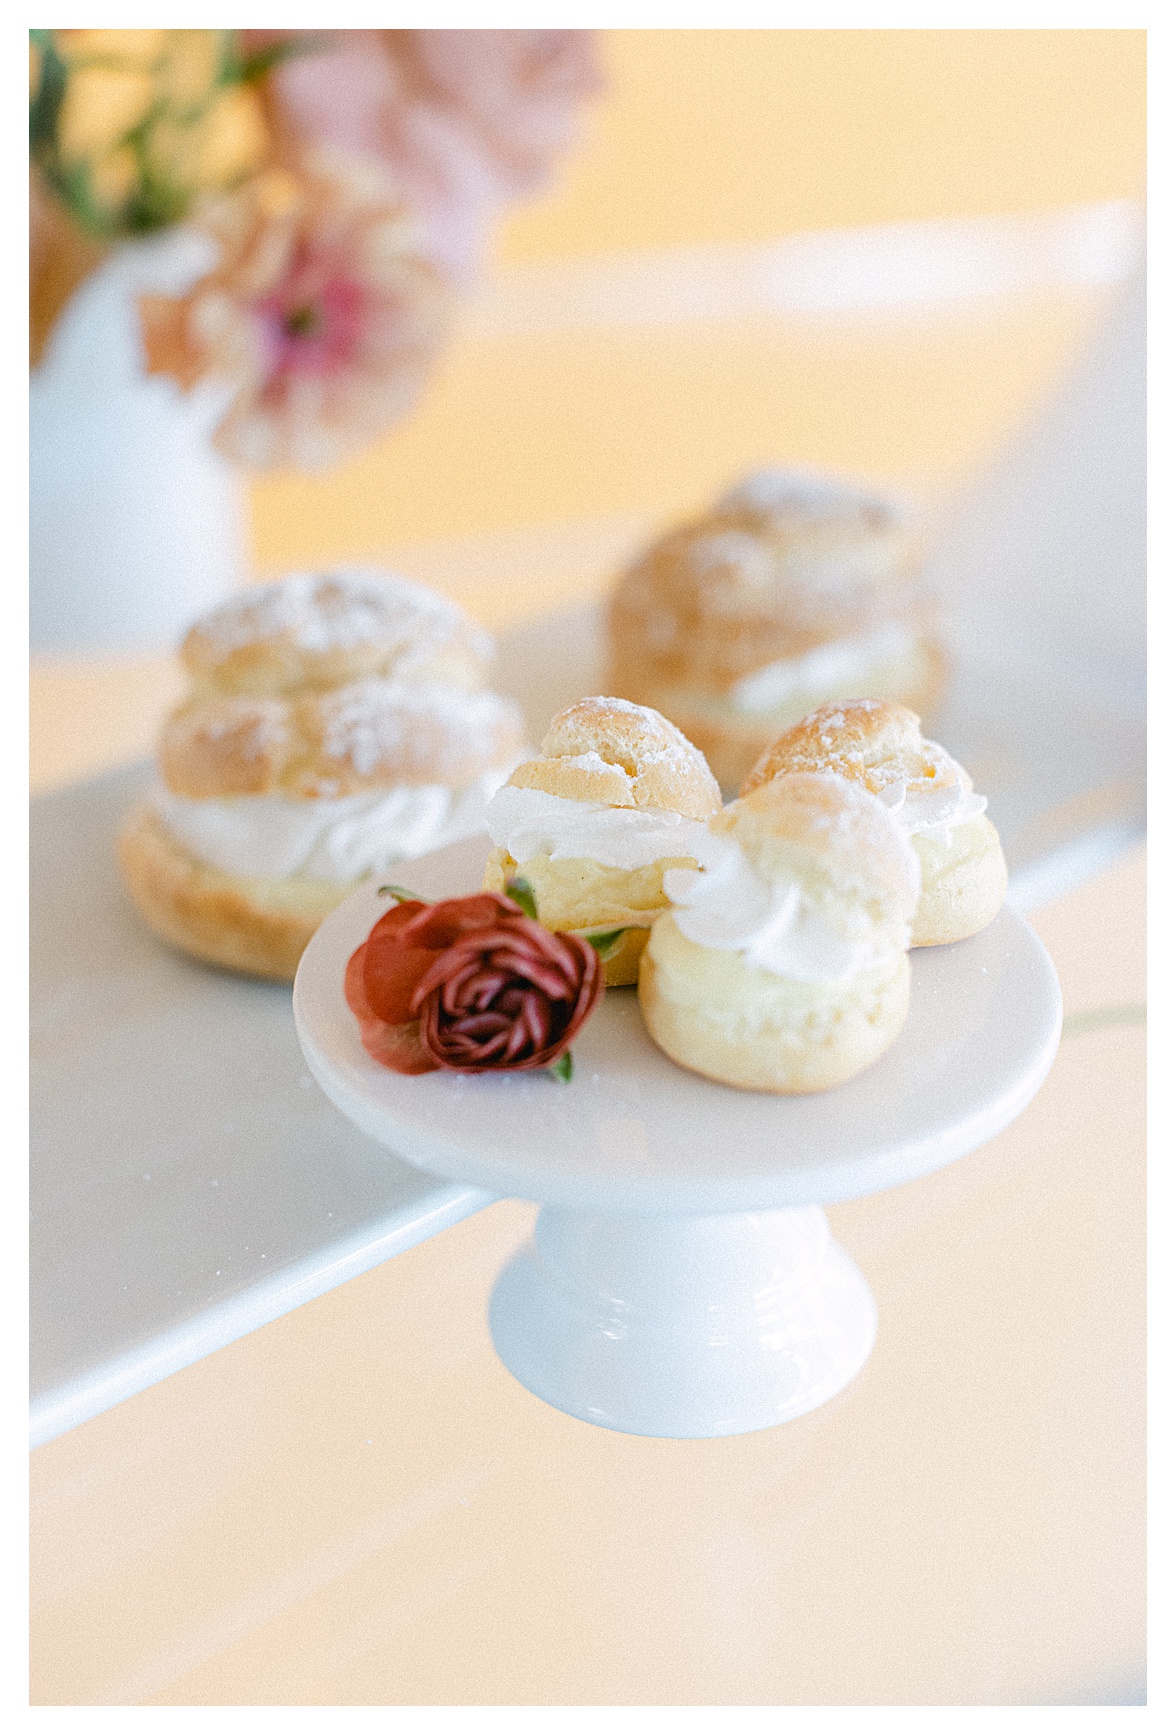 cream puffs for wedding desserts